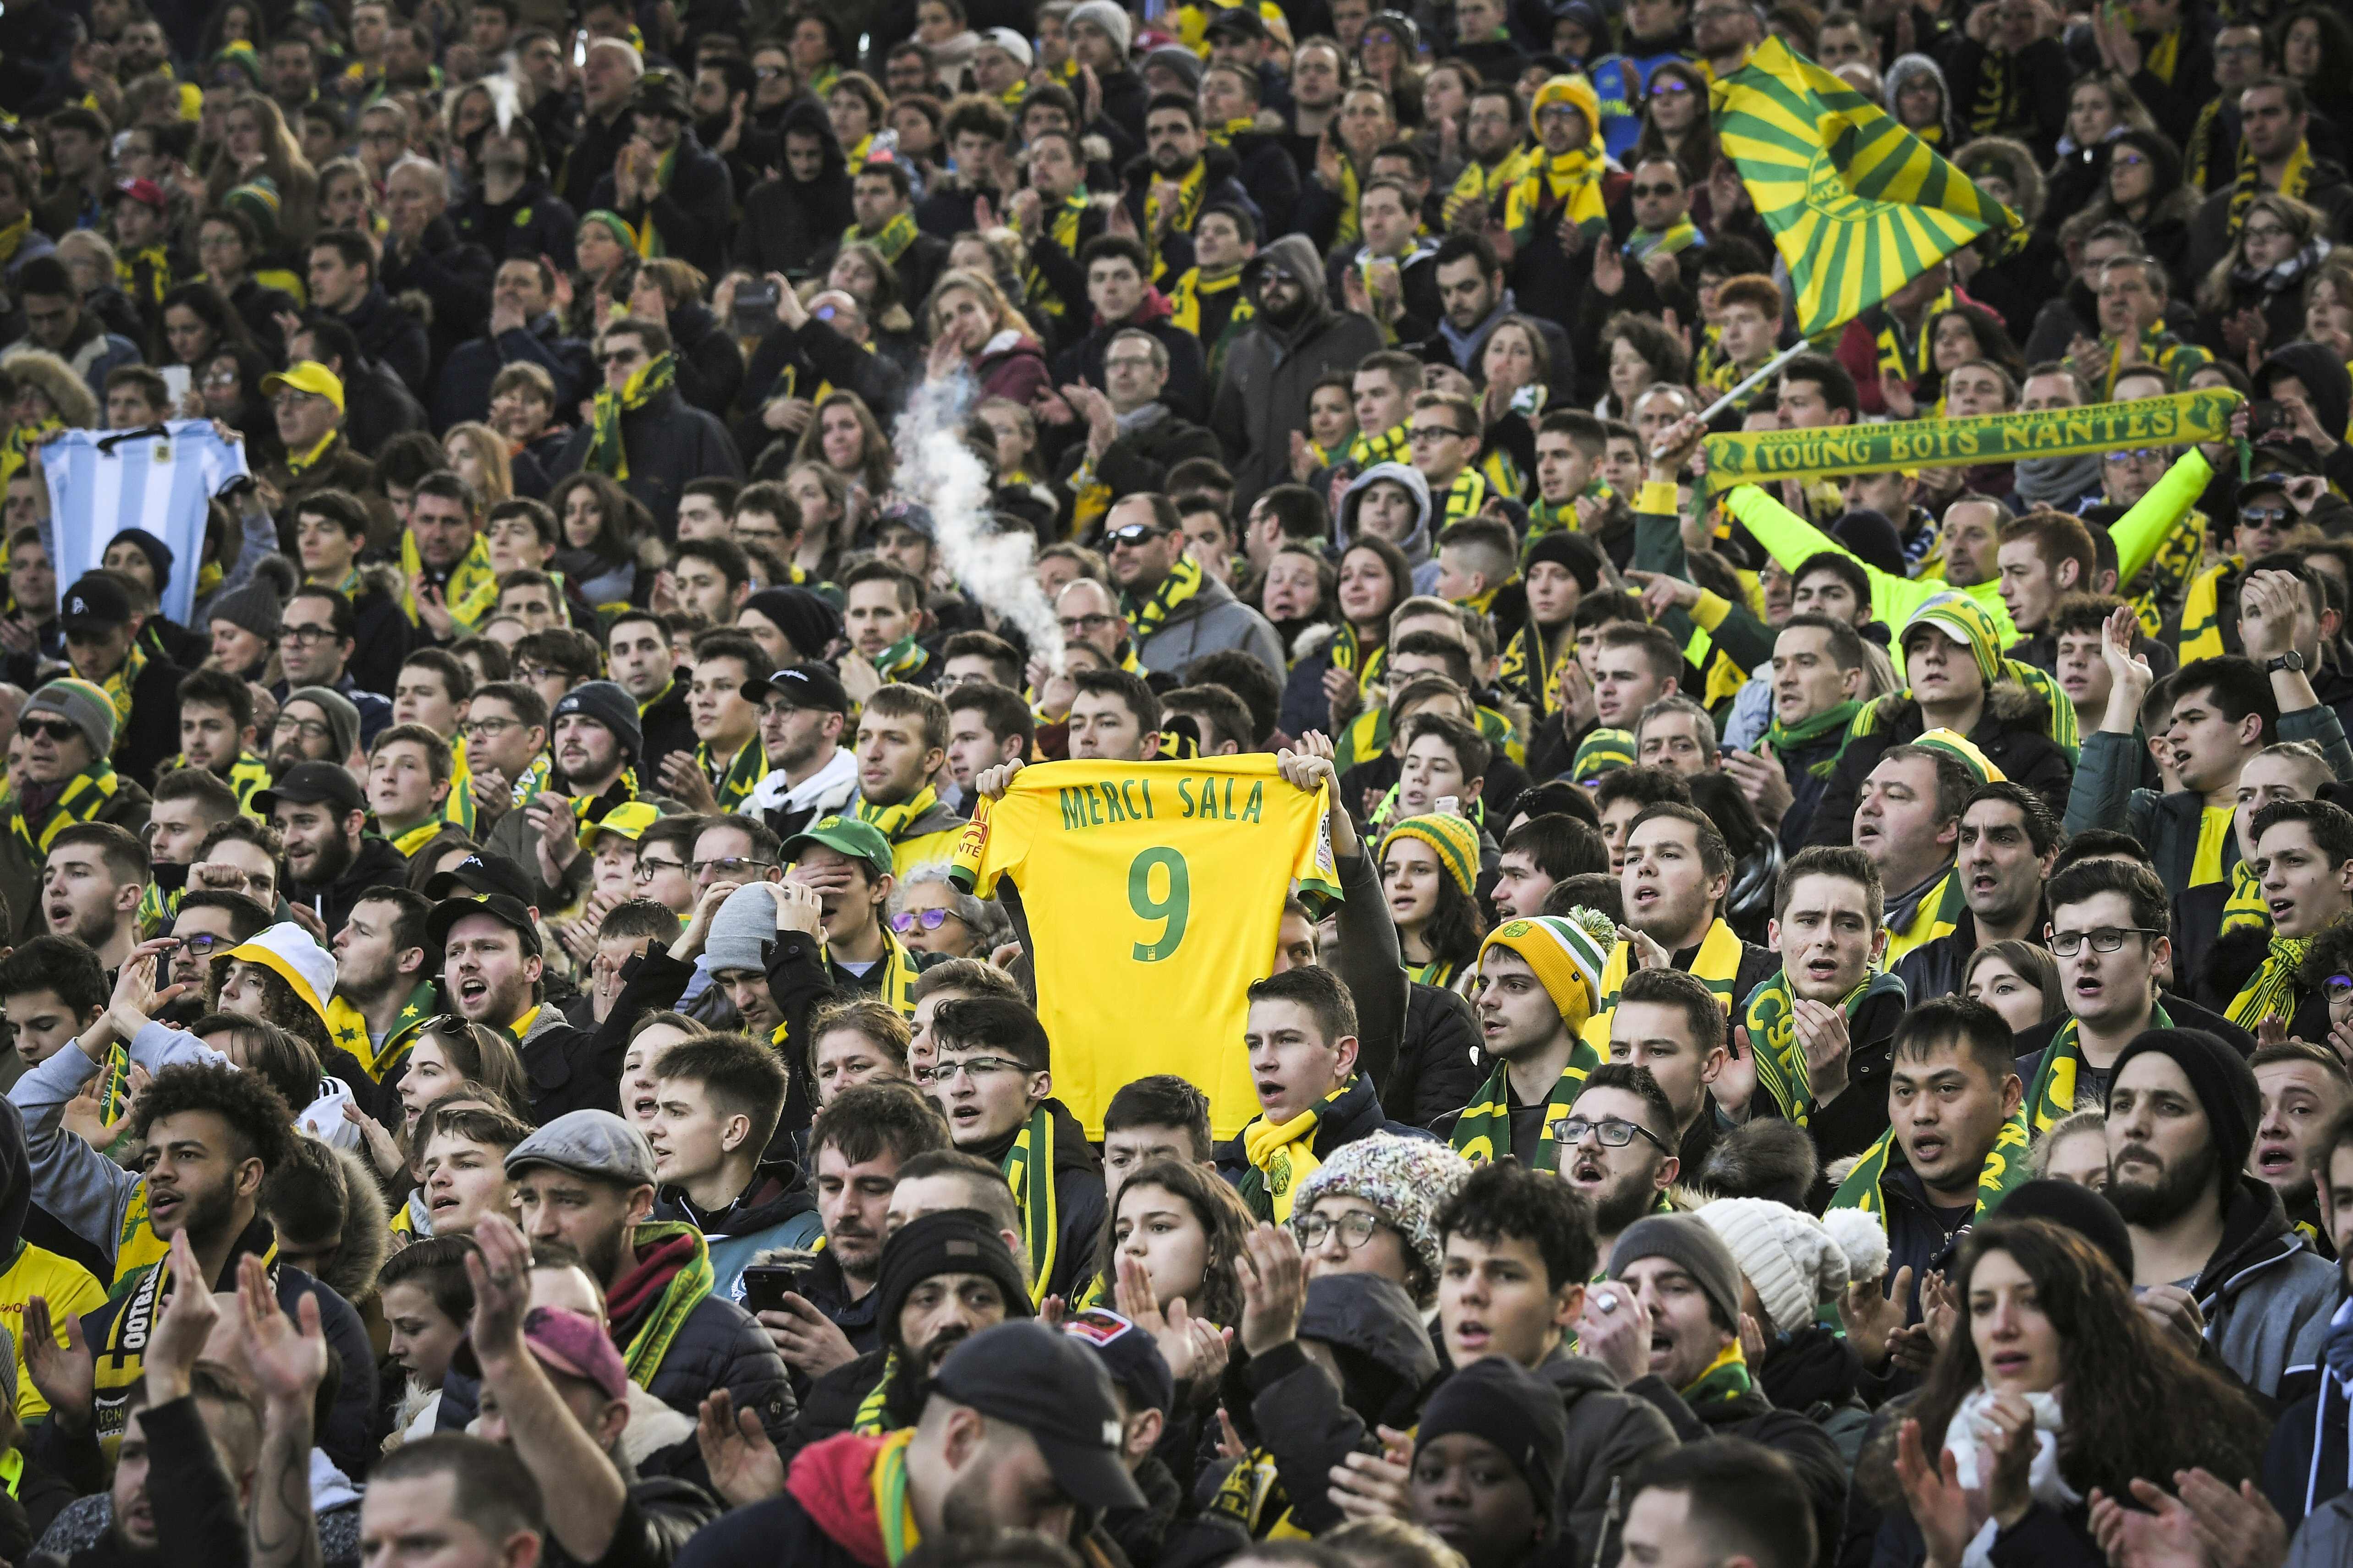 La afición al futbol siempre recordará a Emiliano Sala. (Foto Prensa Libre: AFP)